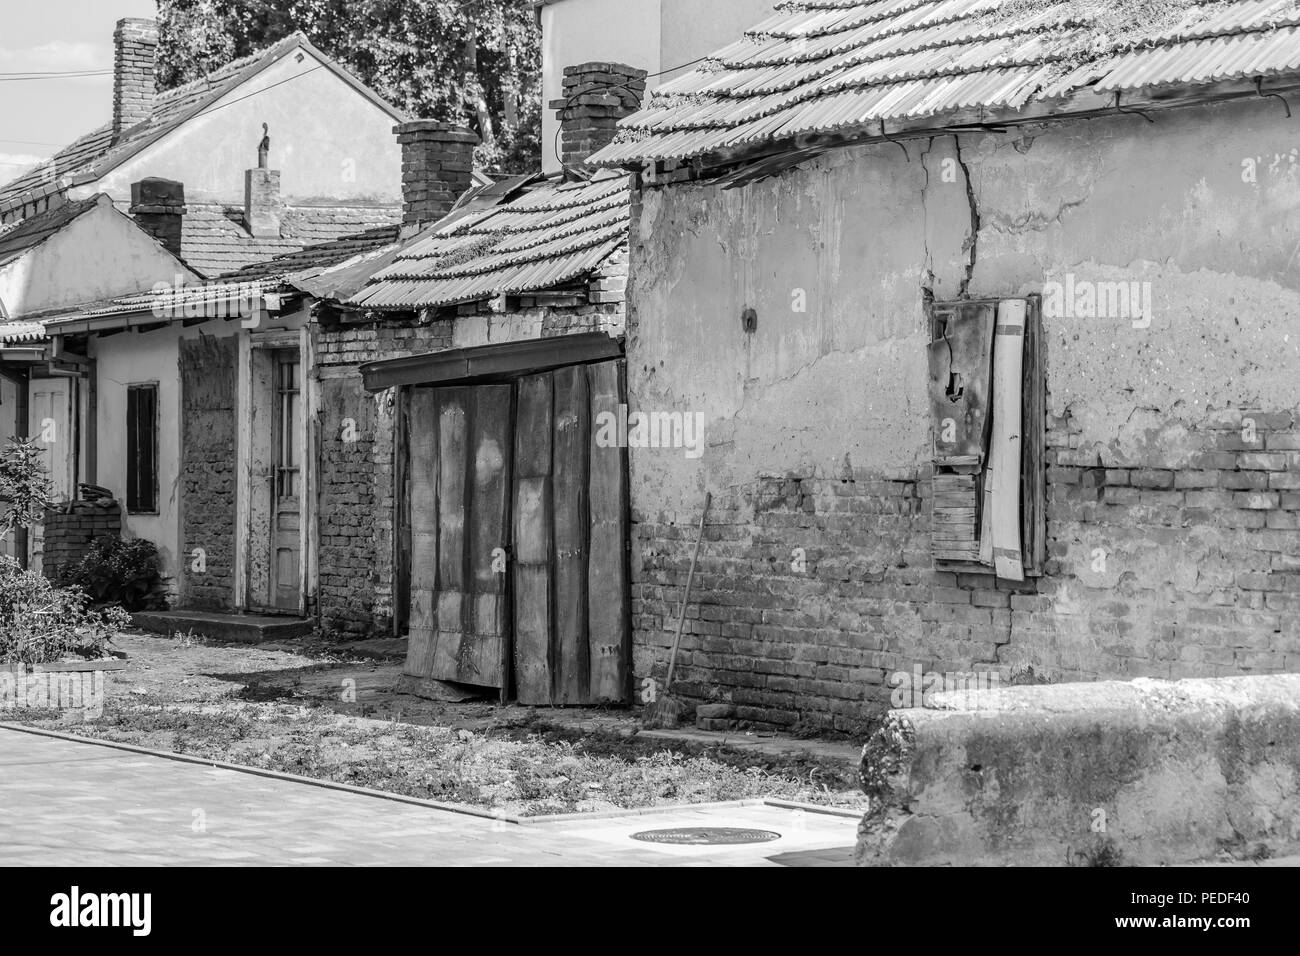 Vecchio abbandonate case a spiovente, Black & White, close up Foto Stock